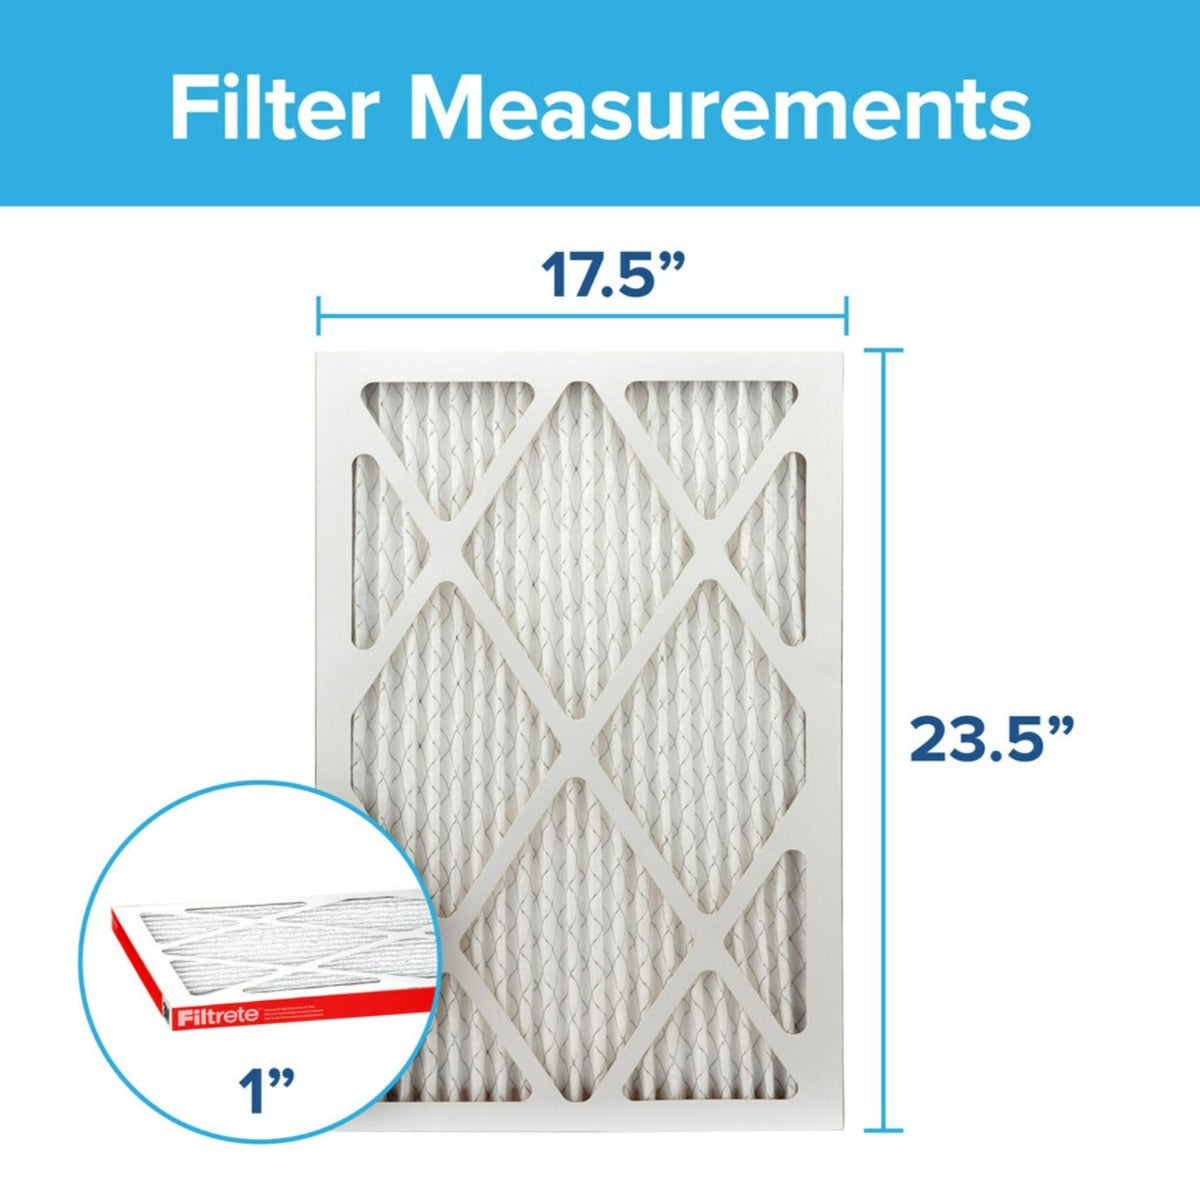 3M Filtrete 1000 Micro Allergen & Dust Defense Filter - 17.5x23.5x1 (4-Pack)